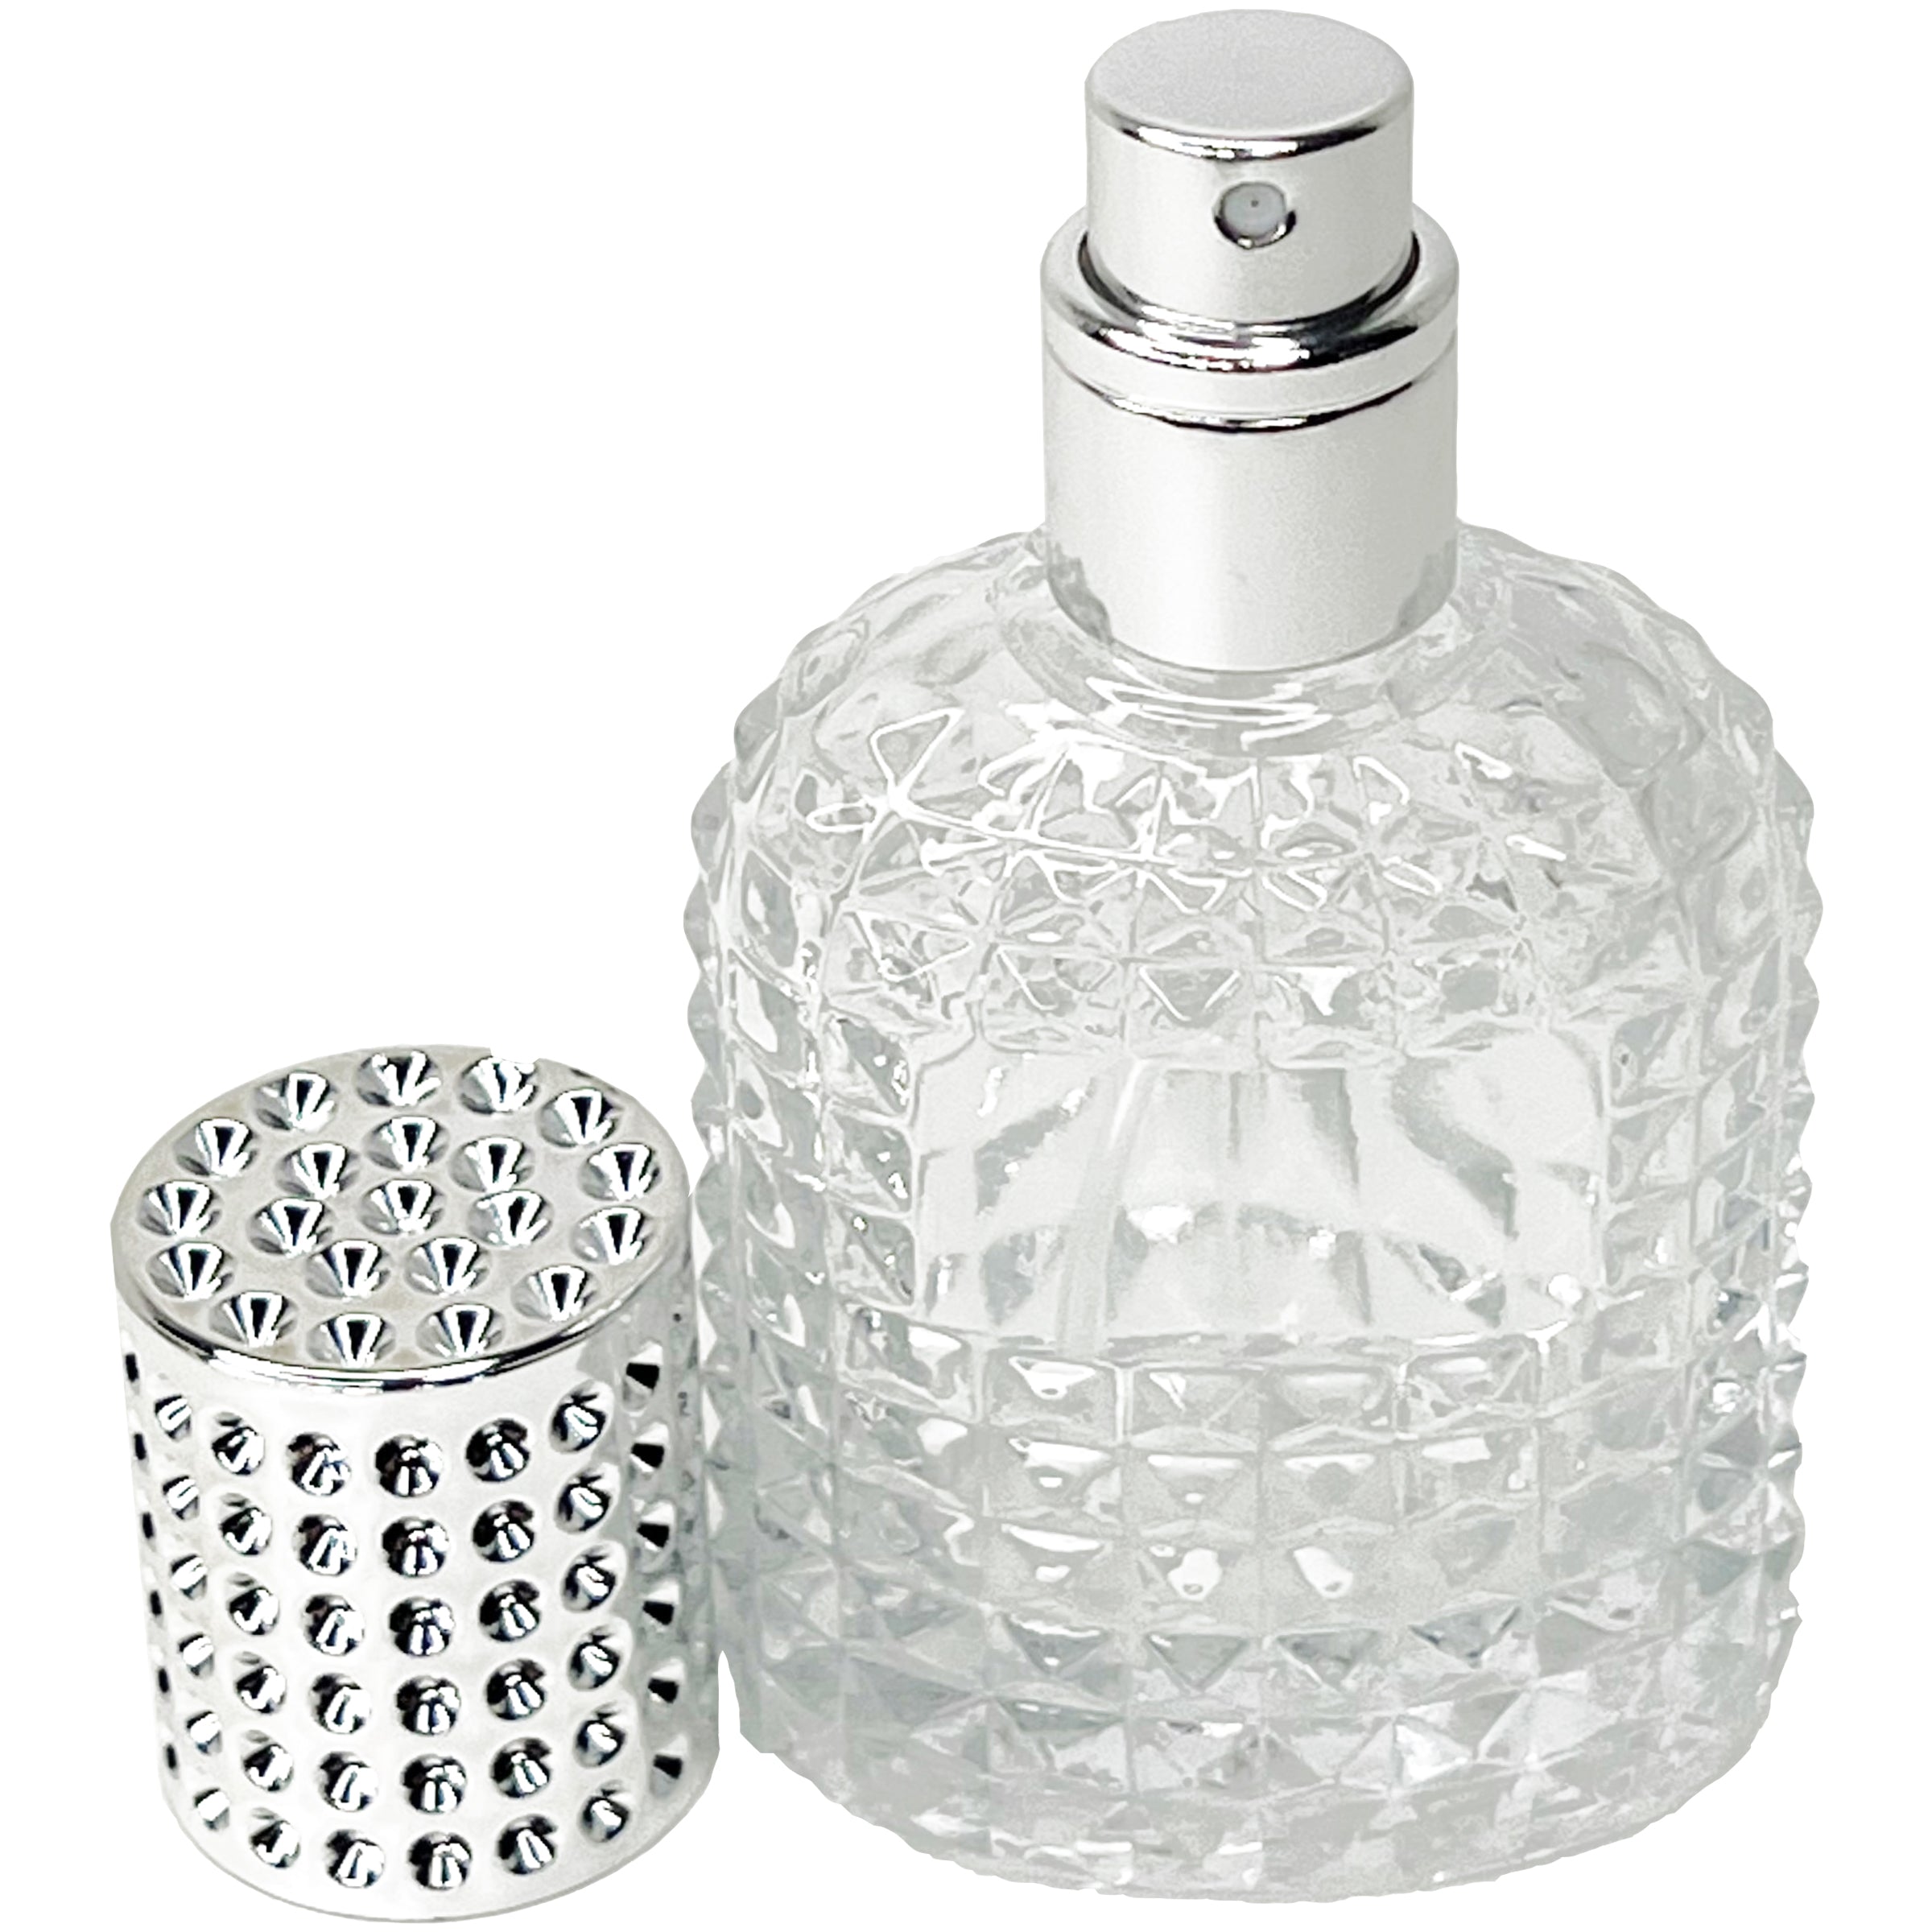 30ml 1oz Pineapple glass perfume spray bottles